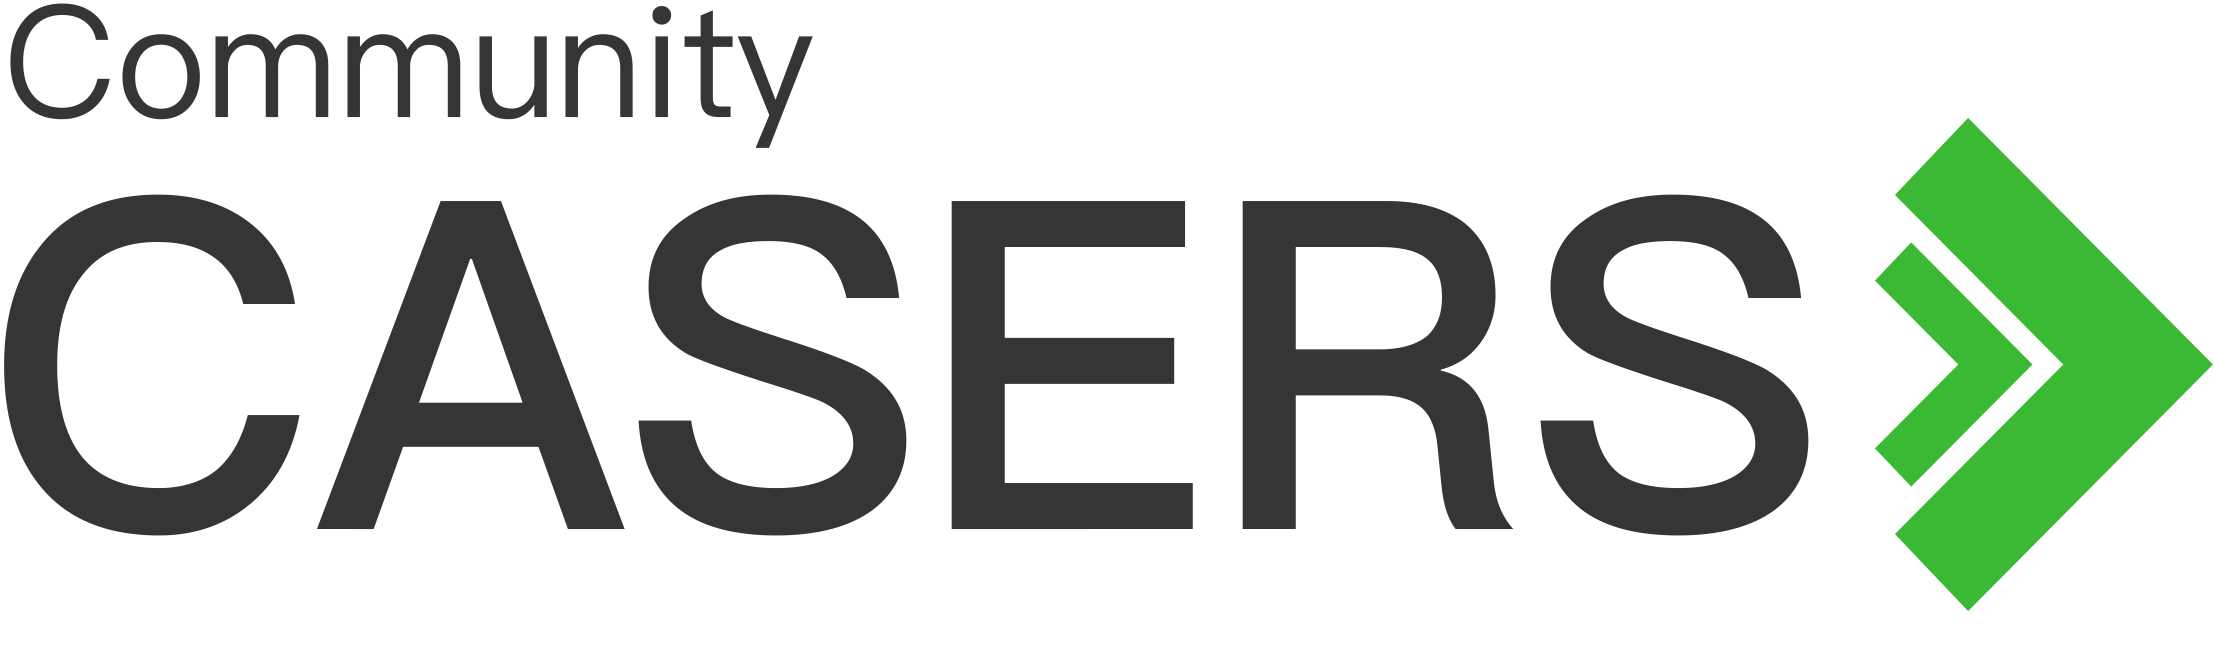 Логотип Casers